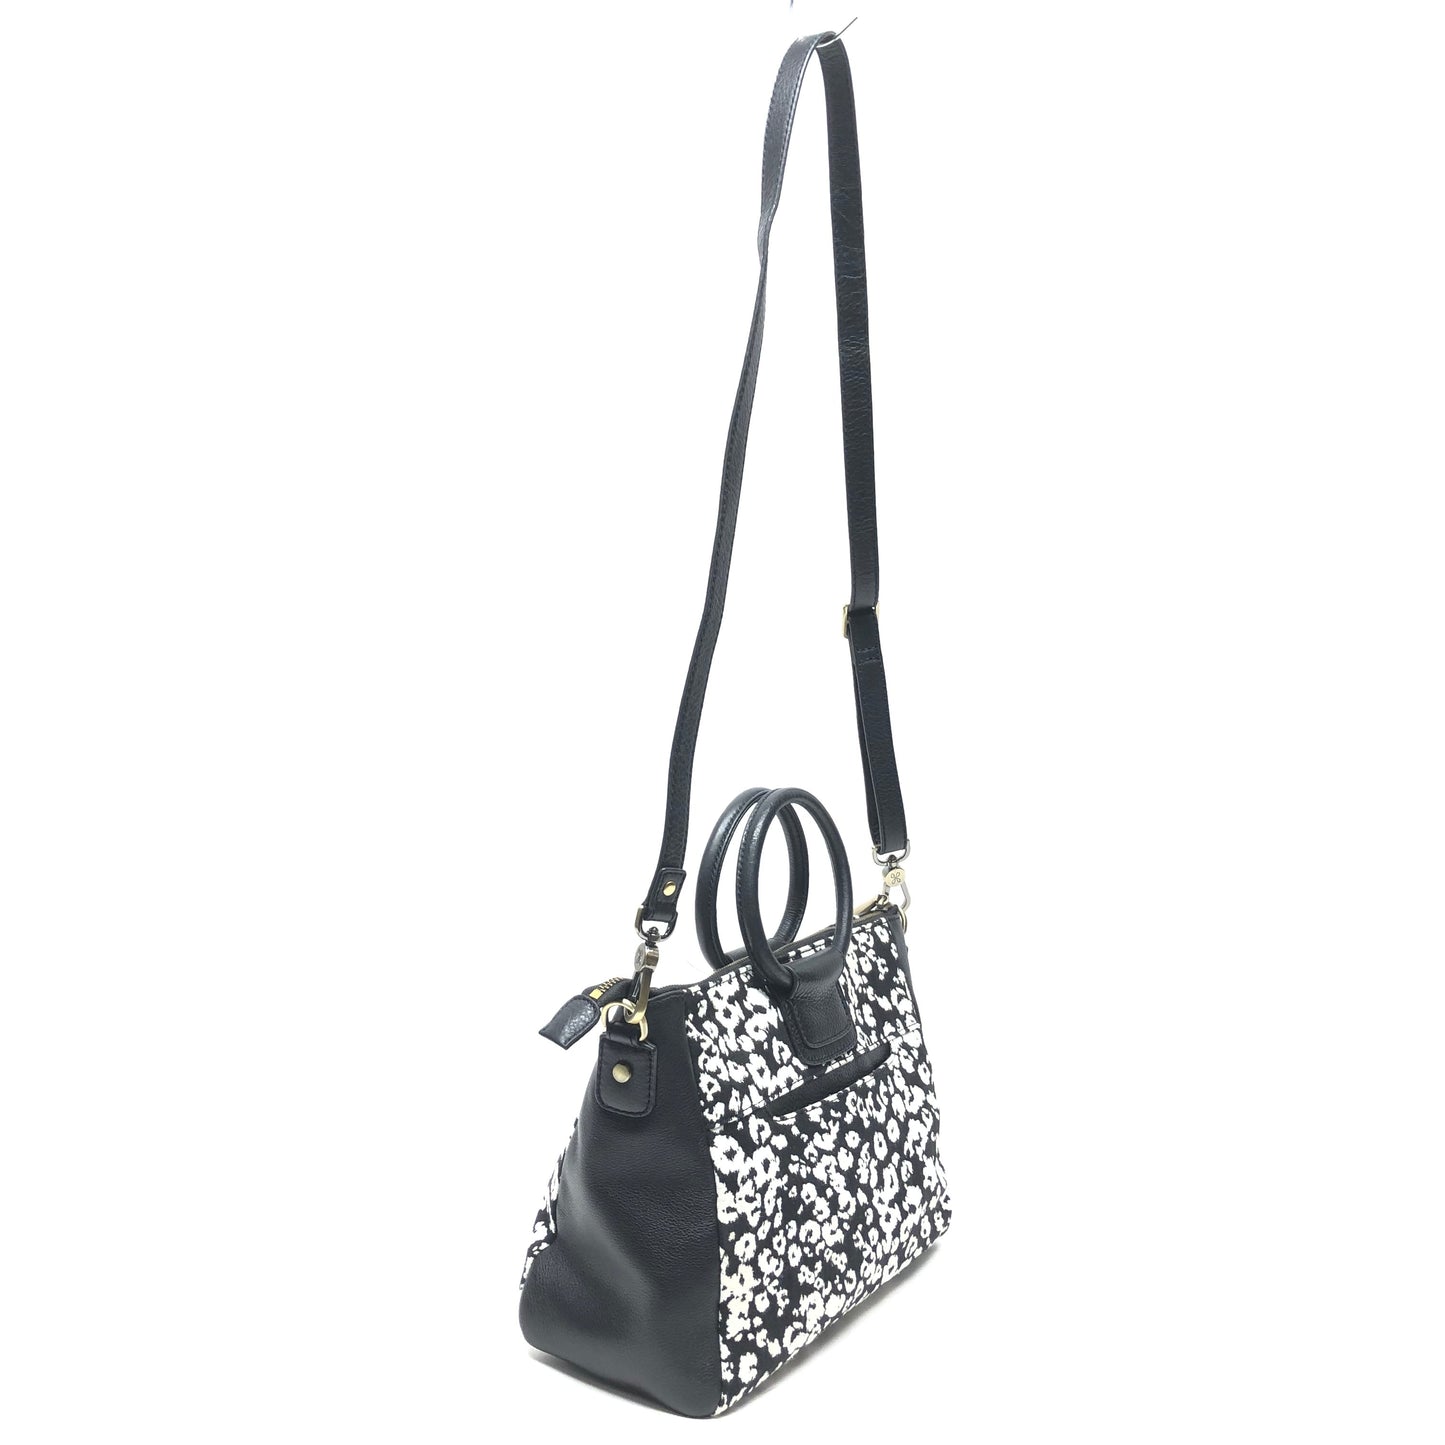 Handbag Designer By Hobo Intl  Size: Medium